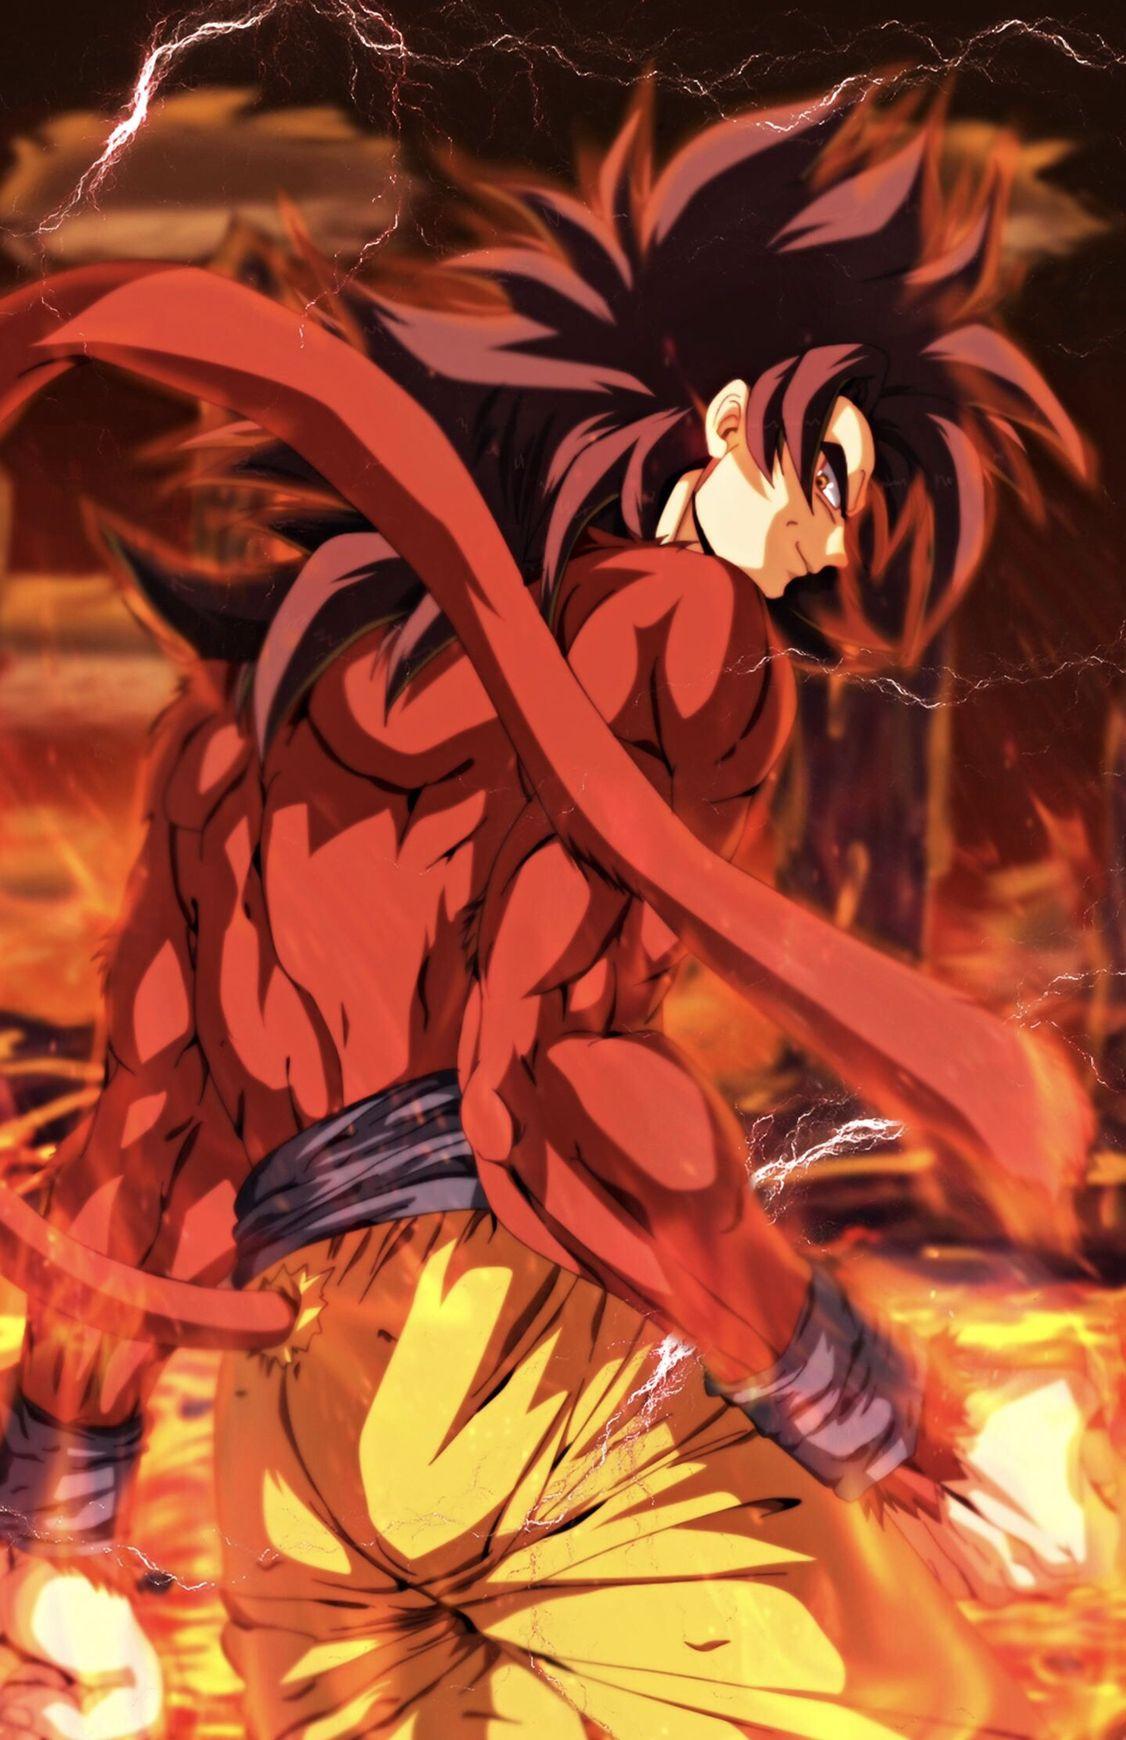 Goku Super Saiyan 4. Dragon ball goku, Dragon ball z, Dragon ball